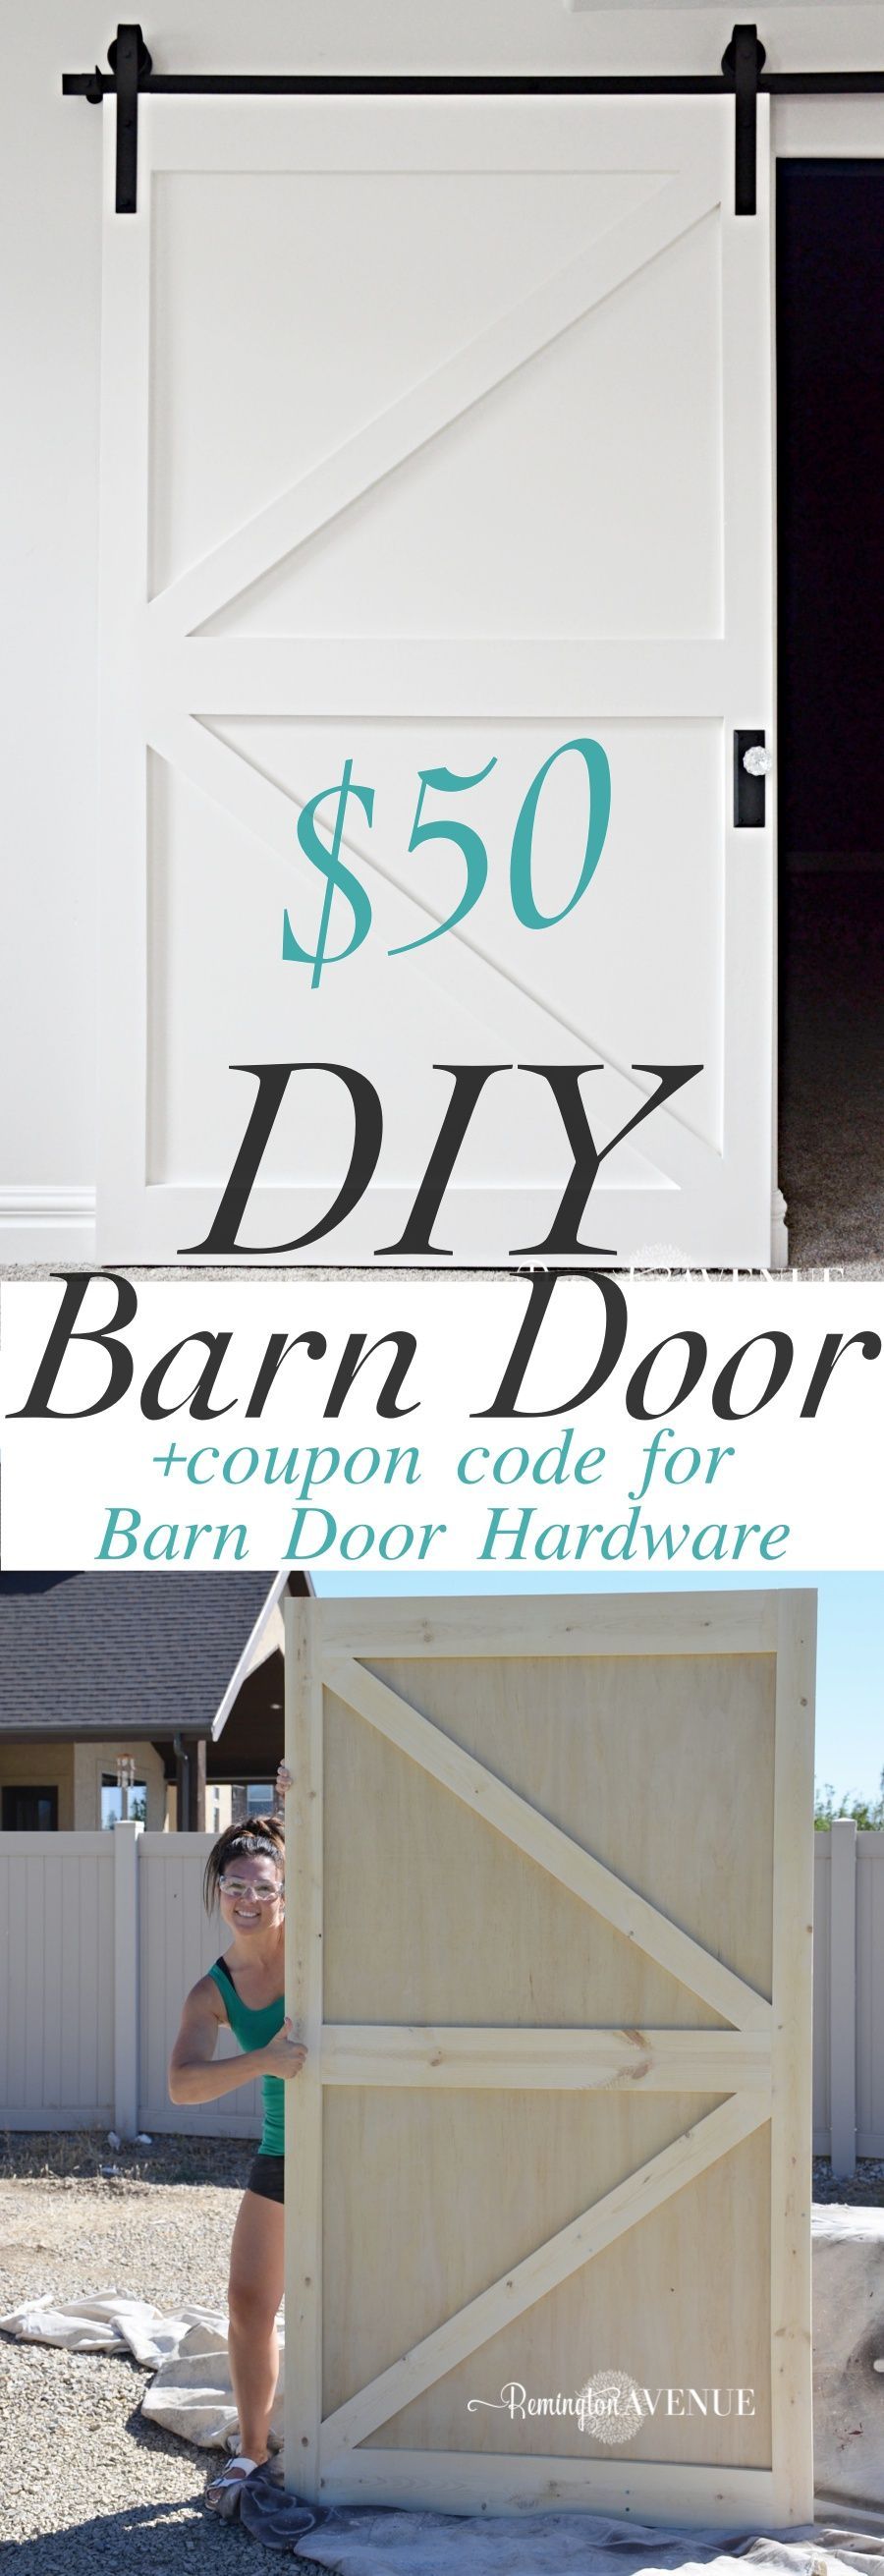 $50 DIY British Brace Barn Door -with promo code for The Barn Door Hardware Store  Remington Avenue